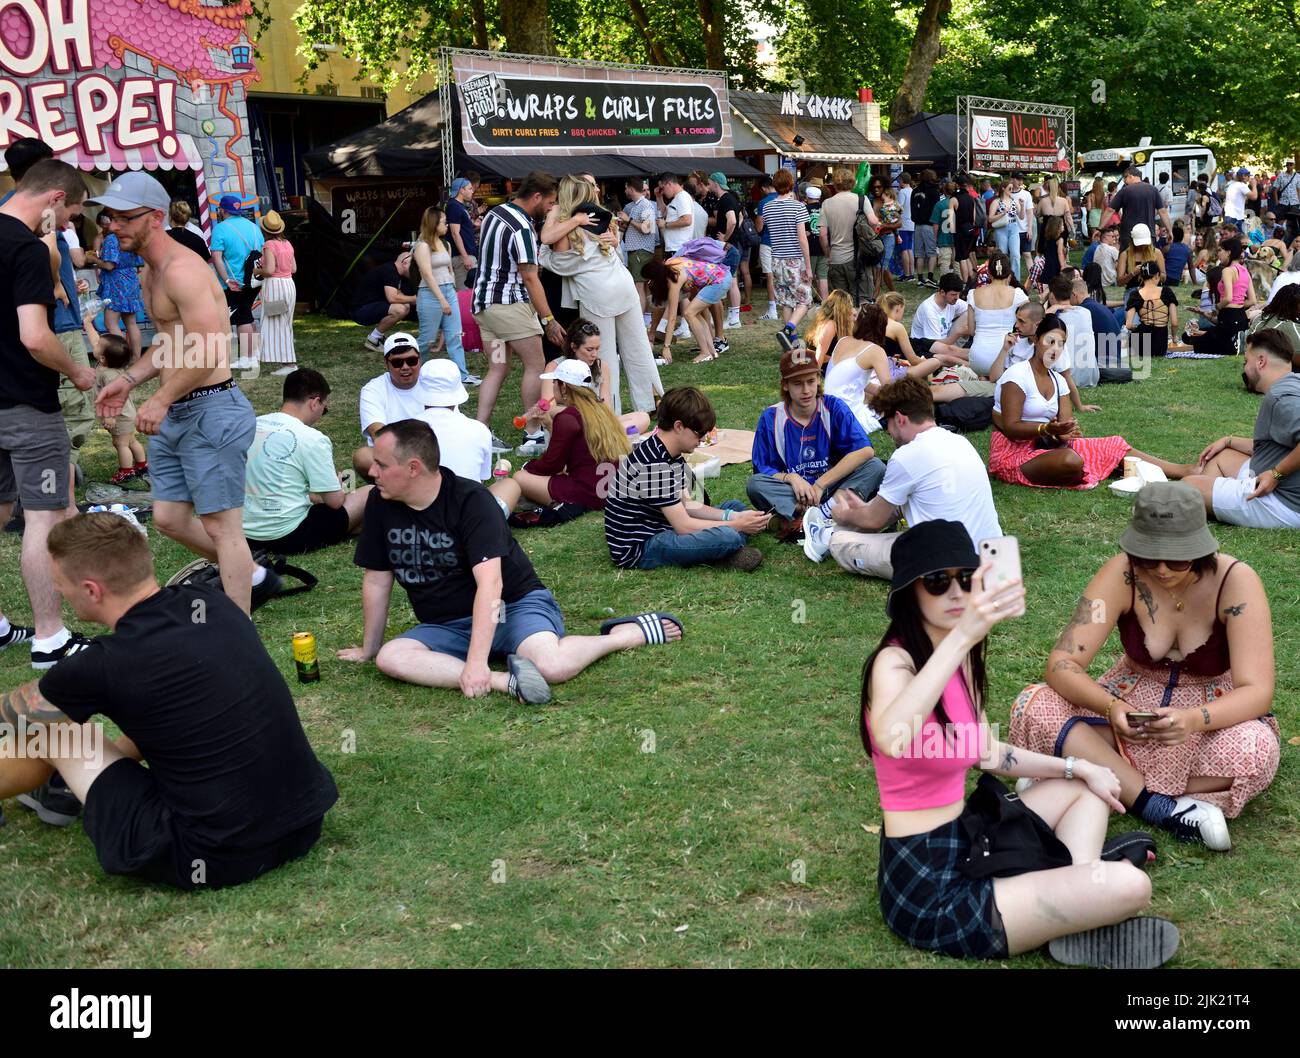 Folle di persone che si rilassano sull'erba durante la calda giornata estiva a "Queens Square" vicino alle bancarelle alimentari, Bristol Harbour Festival, Regno Unito Foto Stock